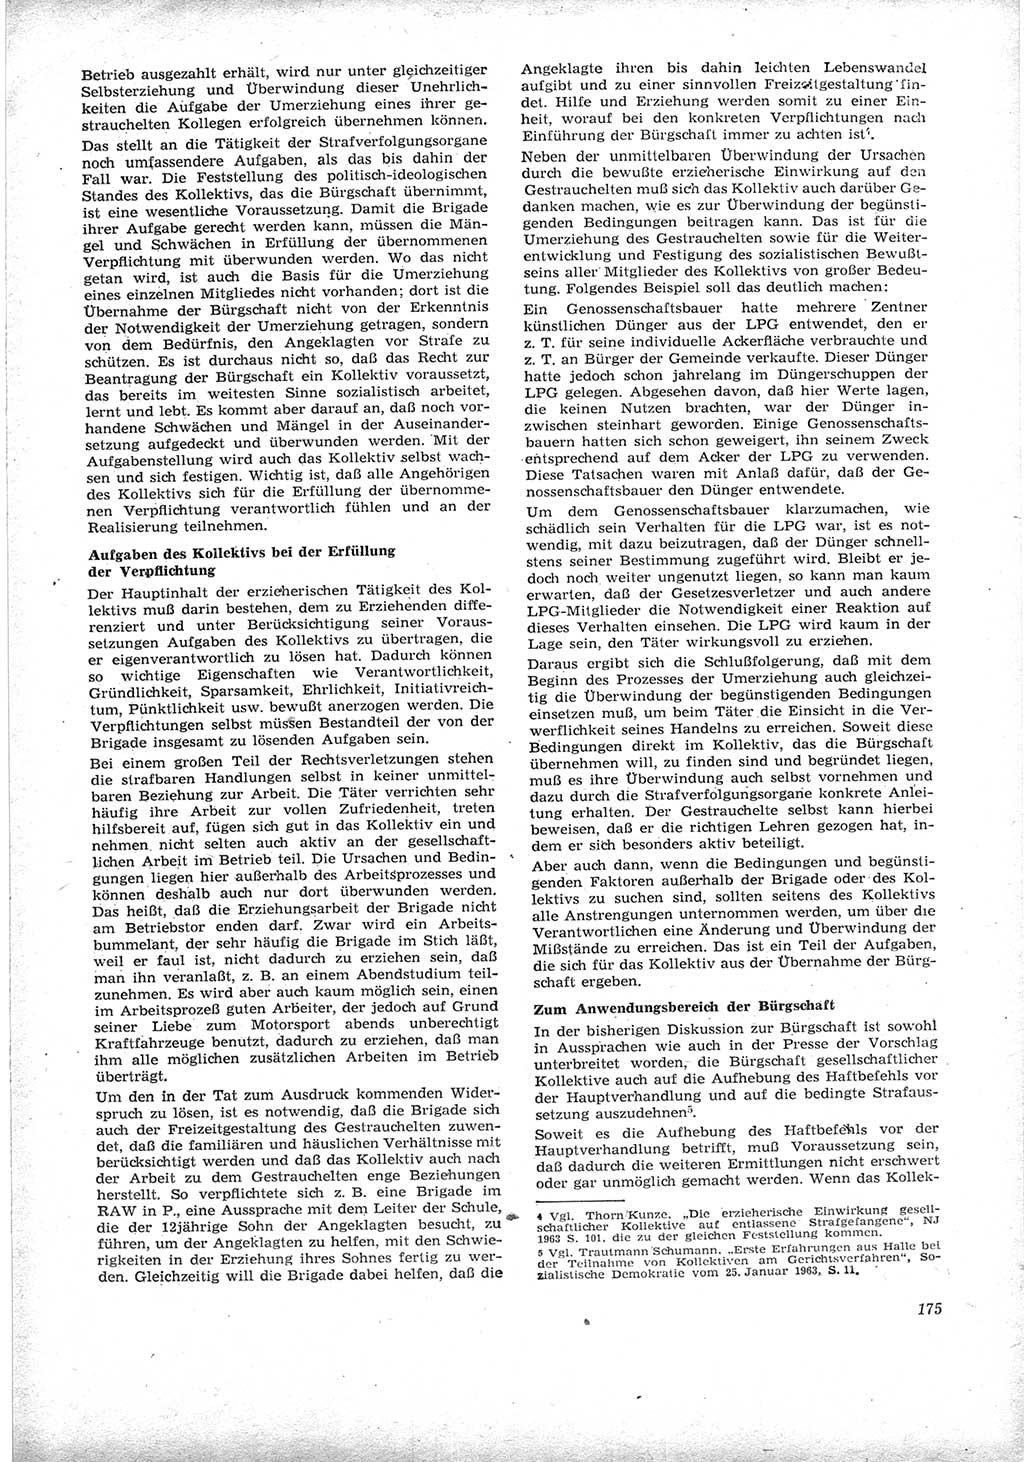 Neue Justiz (NJ), Zeitschrift für Recht und Rechtswissenschaft [Deutsche Demokratische Republik (DDR)], 17. Jahrgang 1963, Seite 175 (NJ DDR 1963, S. 175)